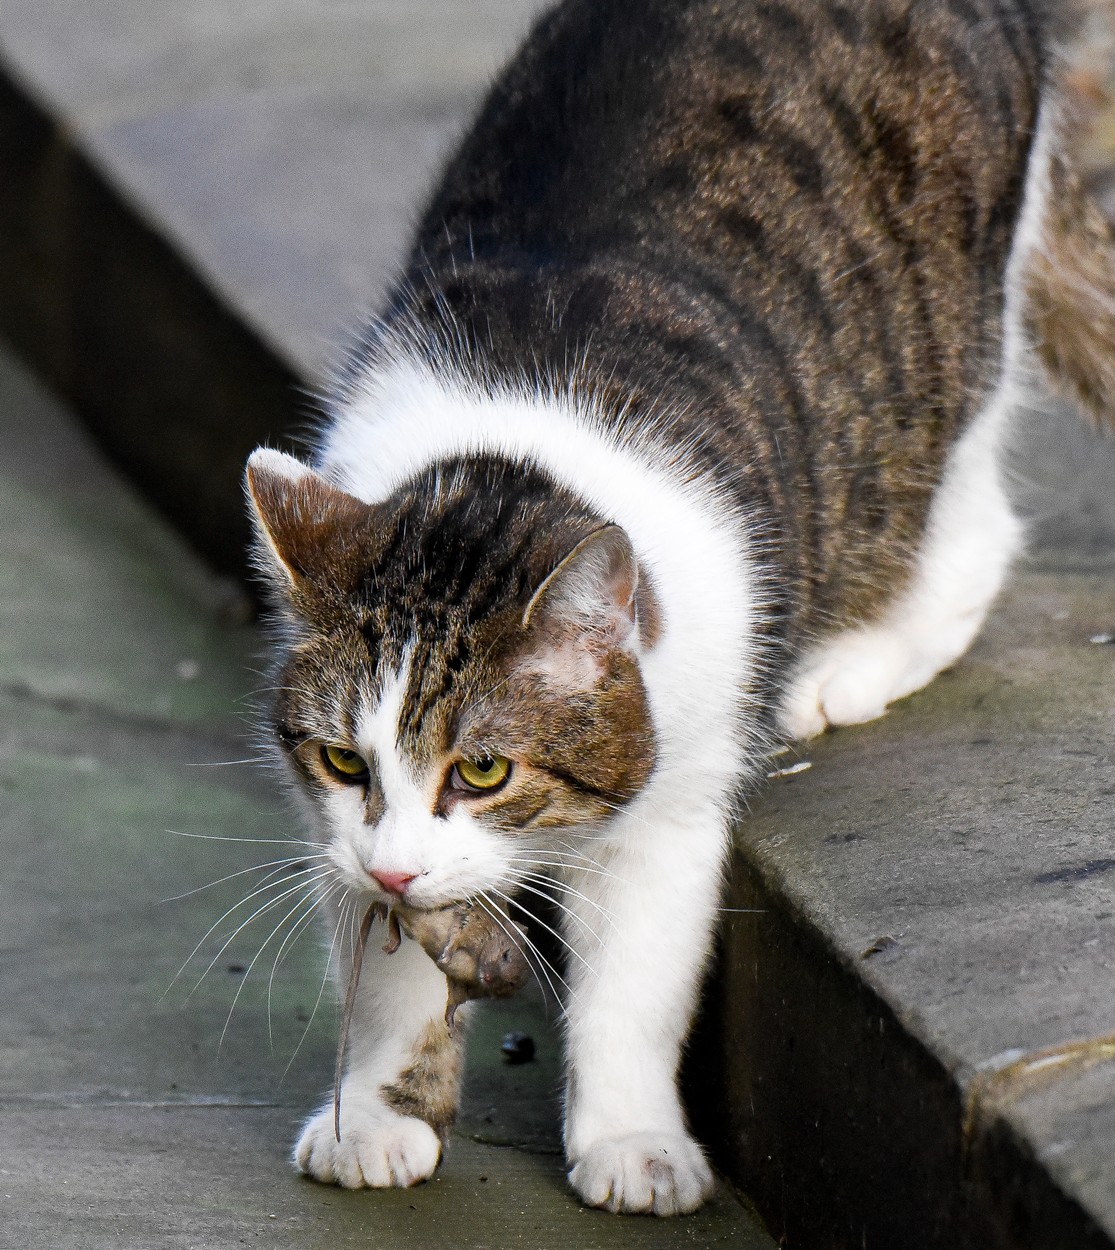 Az angol miniszterelnöki főegerész macska, Larry felhagyott az egerészéssel  - fotók - Blikk